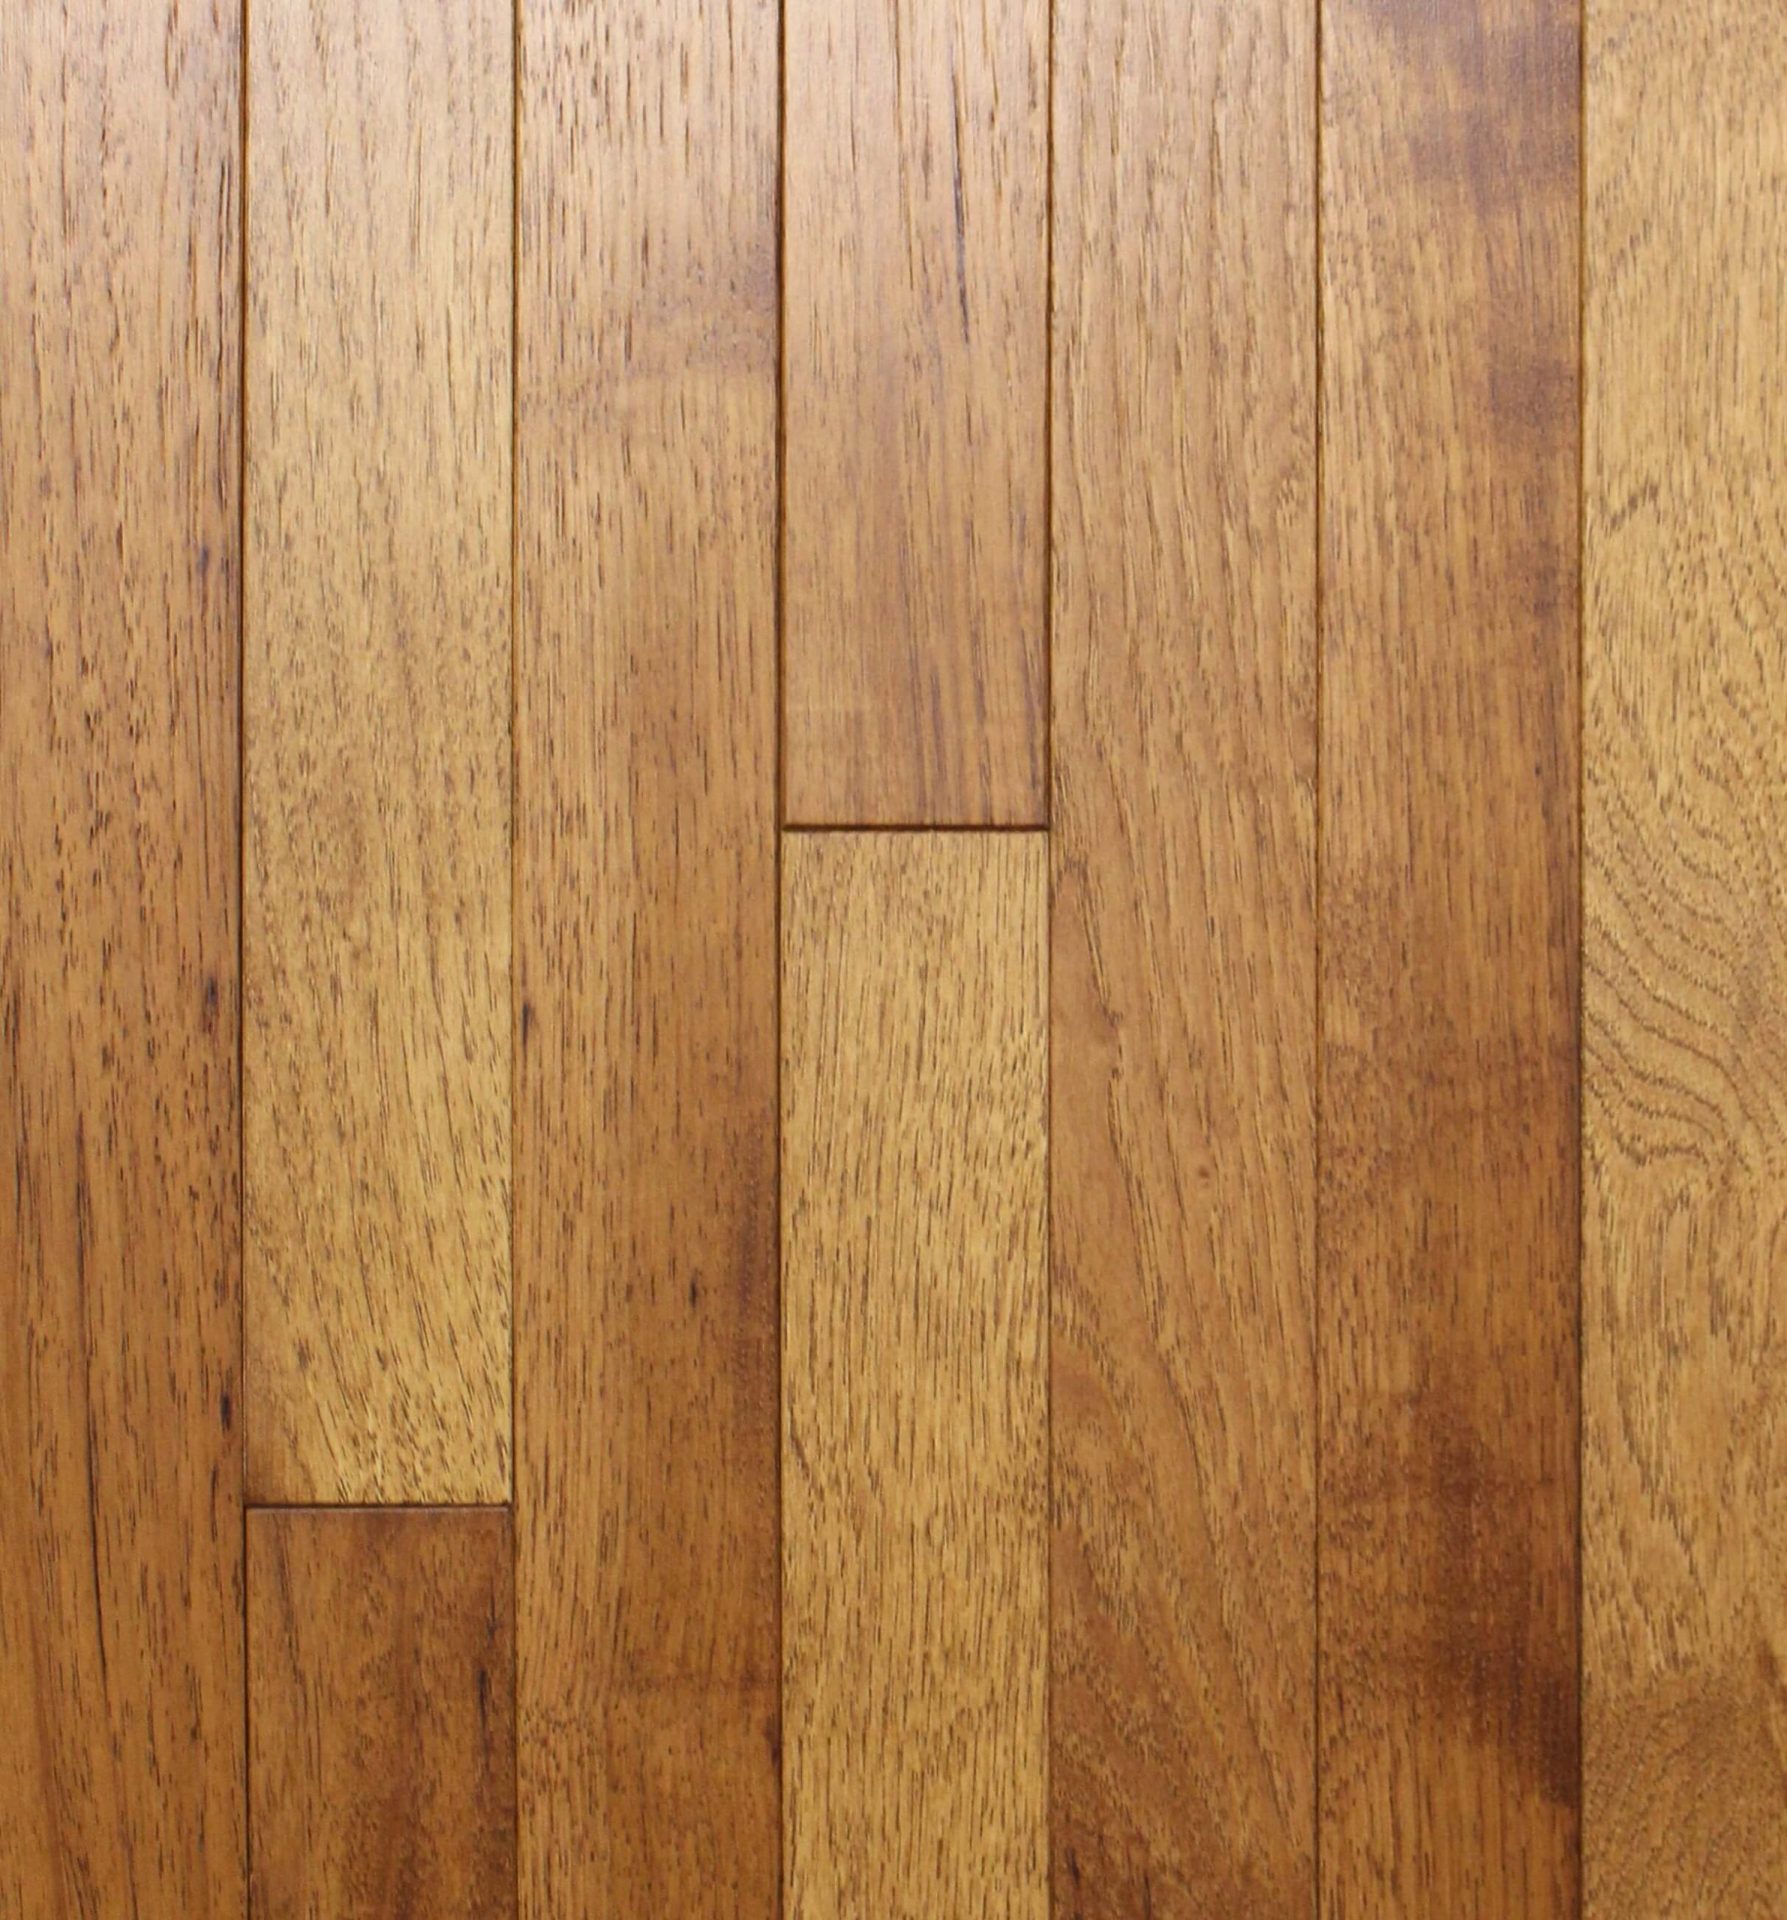 All American Wire Brushed Brown Sugar, Beasley Hardwood Flooring Reviews